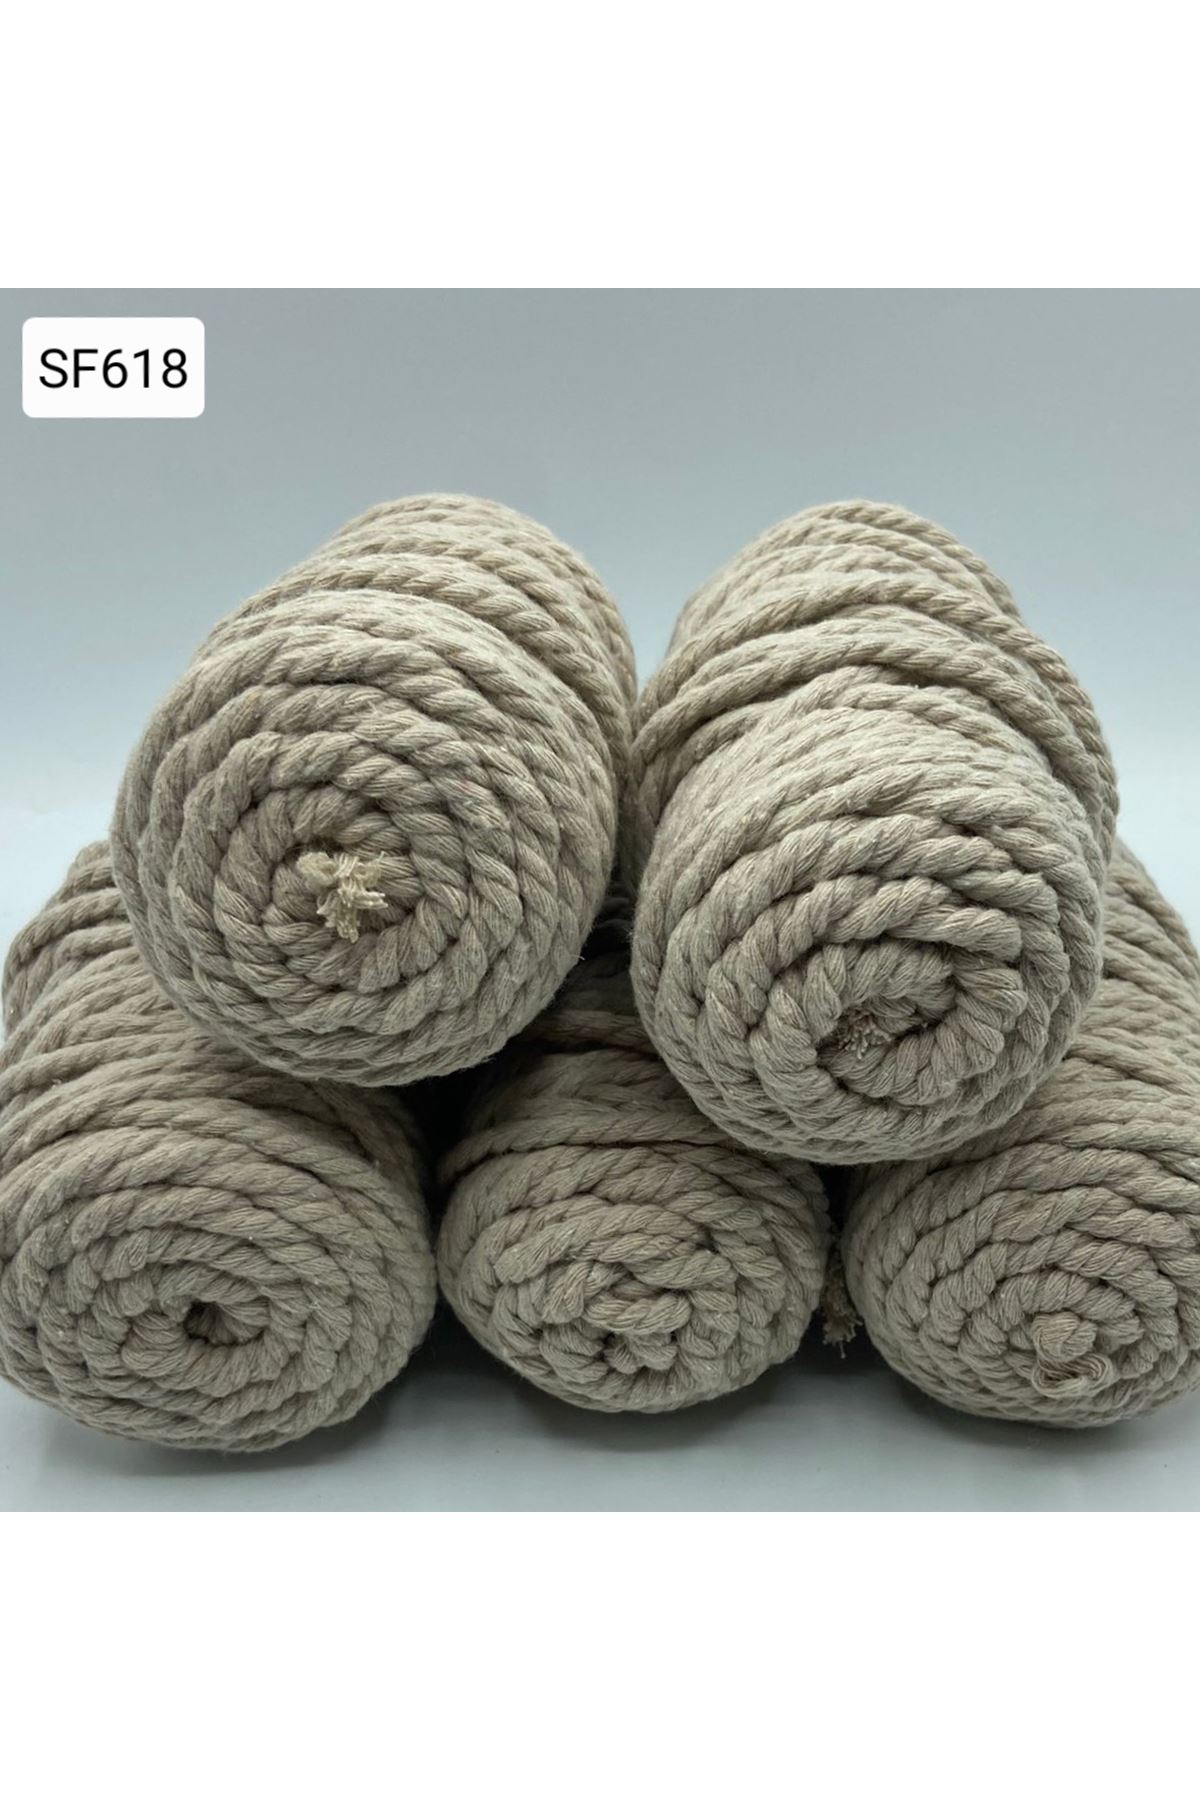 Stok Fazlası 5 mm Büküm Cotton Makrome 1000 gr Koyu Krem SF-618